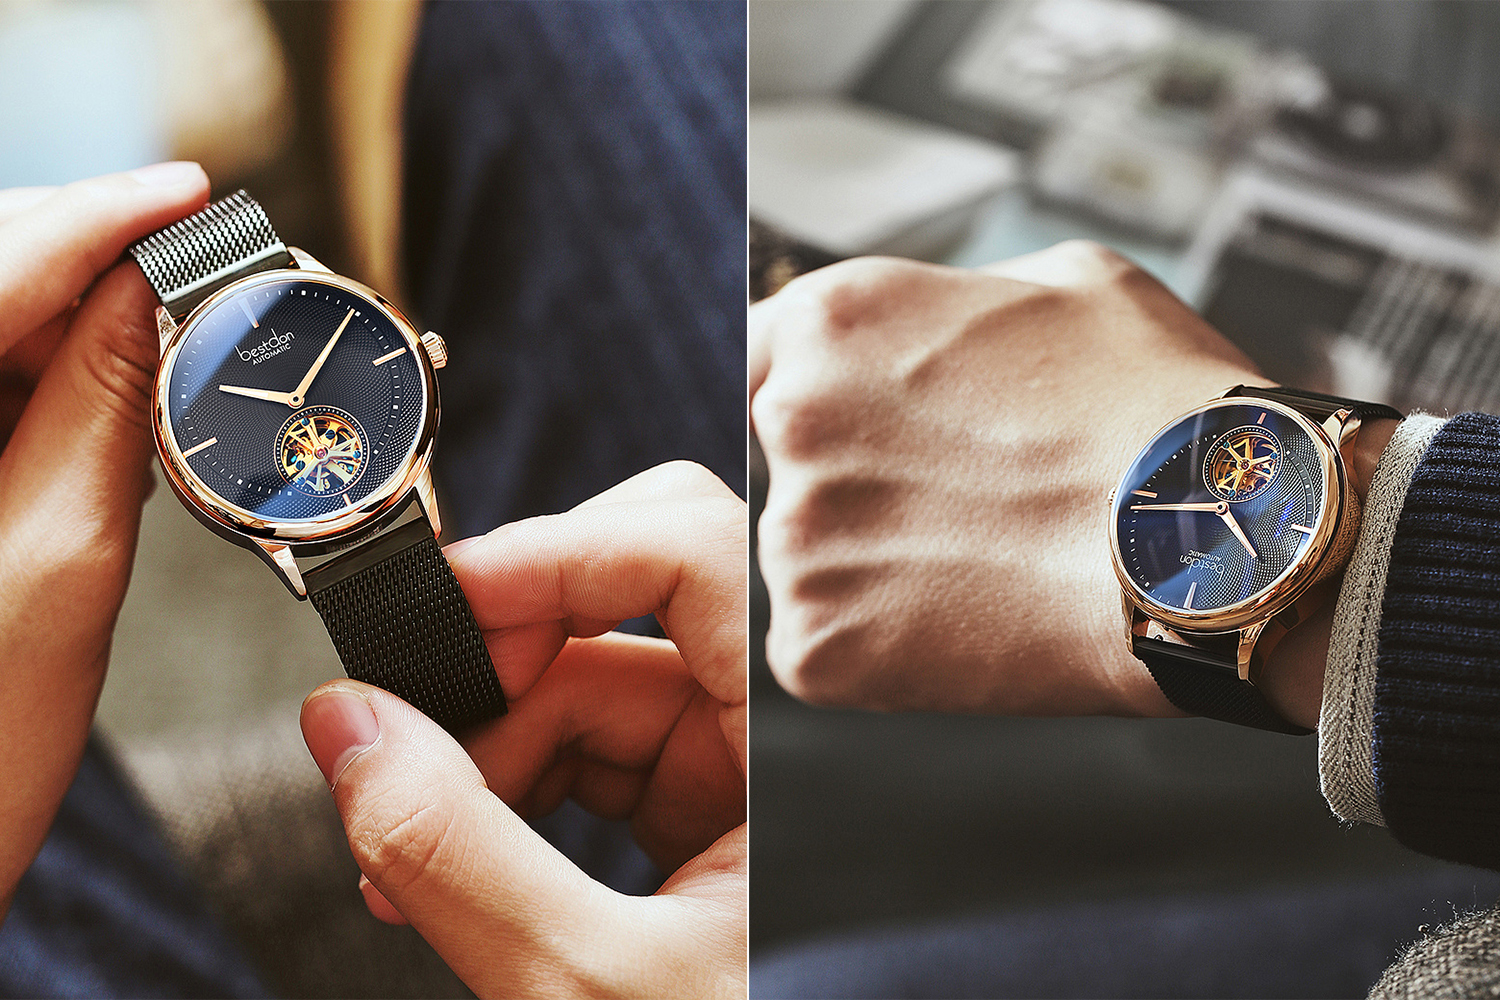 男士如何佩戴手表才能彰显品味呢|欧镭资讯|广州欧镭表业有限公司